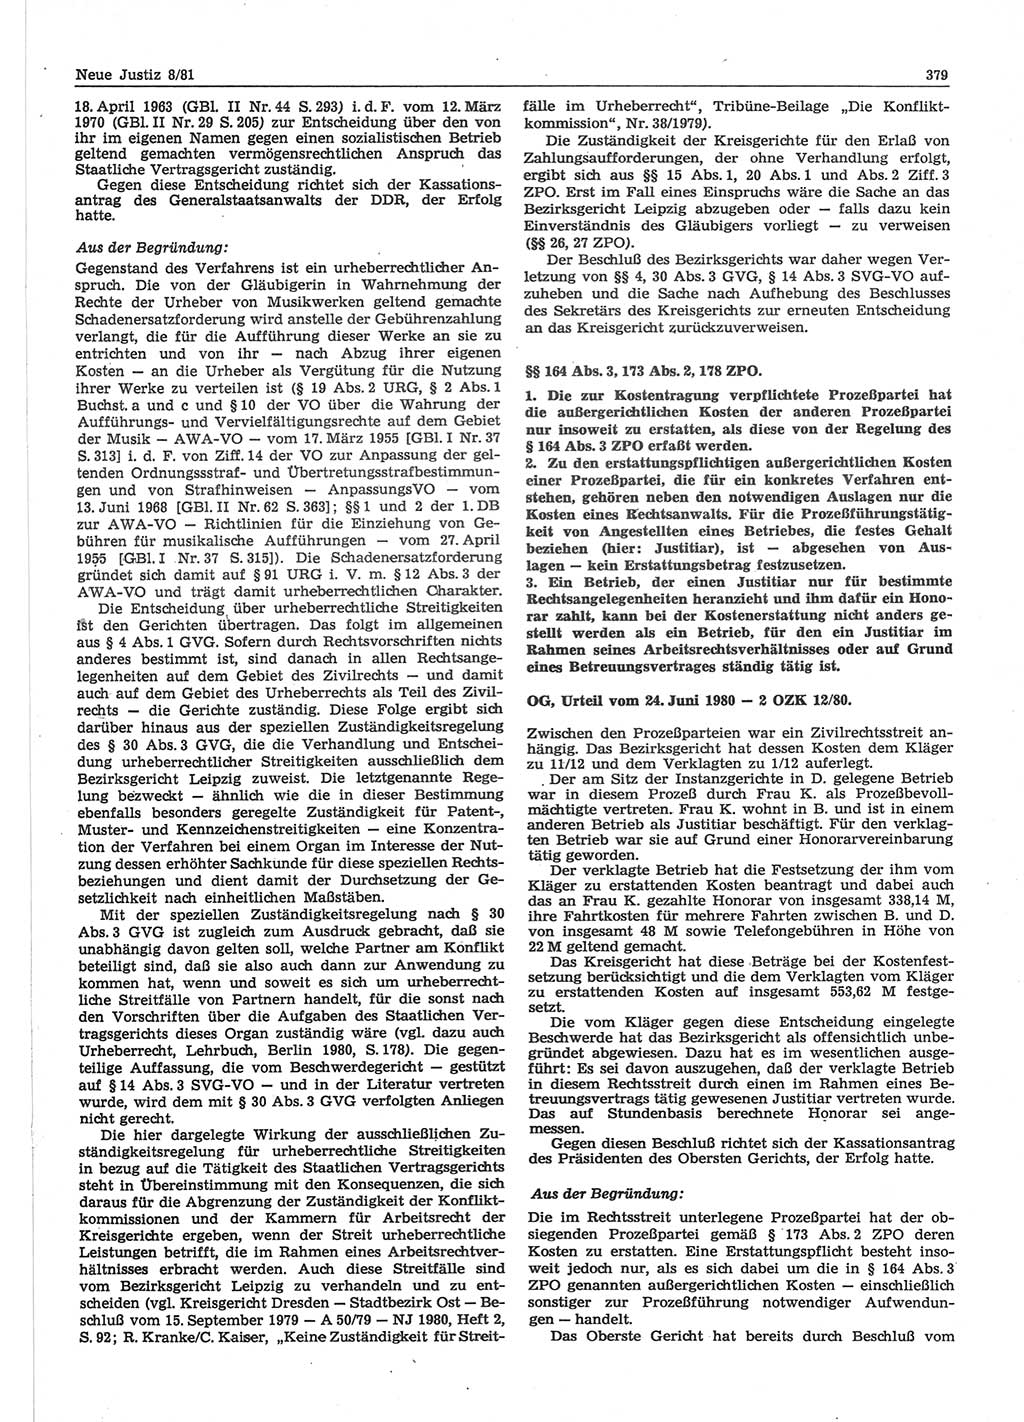 Neue Justiz (NJ), Zeitschrift für sozialistisches Recht und Gesetzlichkeit [Deutsche Demokratische Republik (DDR)], 35. Jahrgang 1981, Seite 379 (NJ DDR 1981, S. 379)